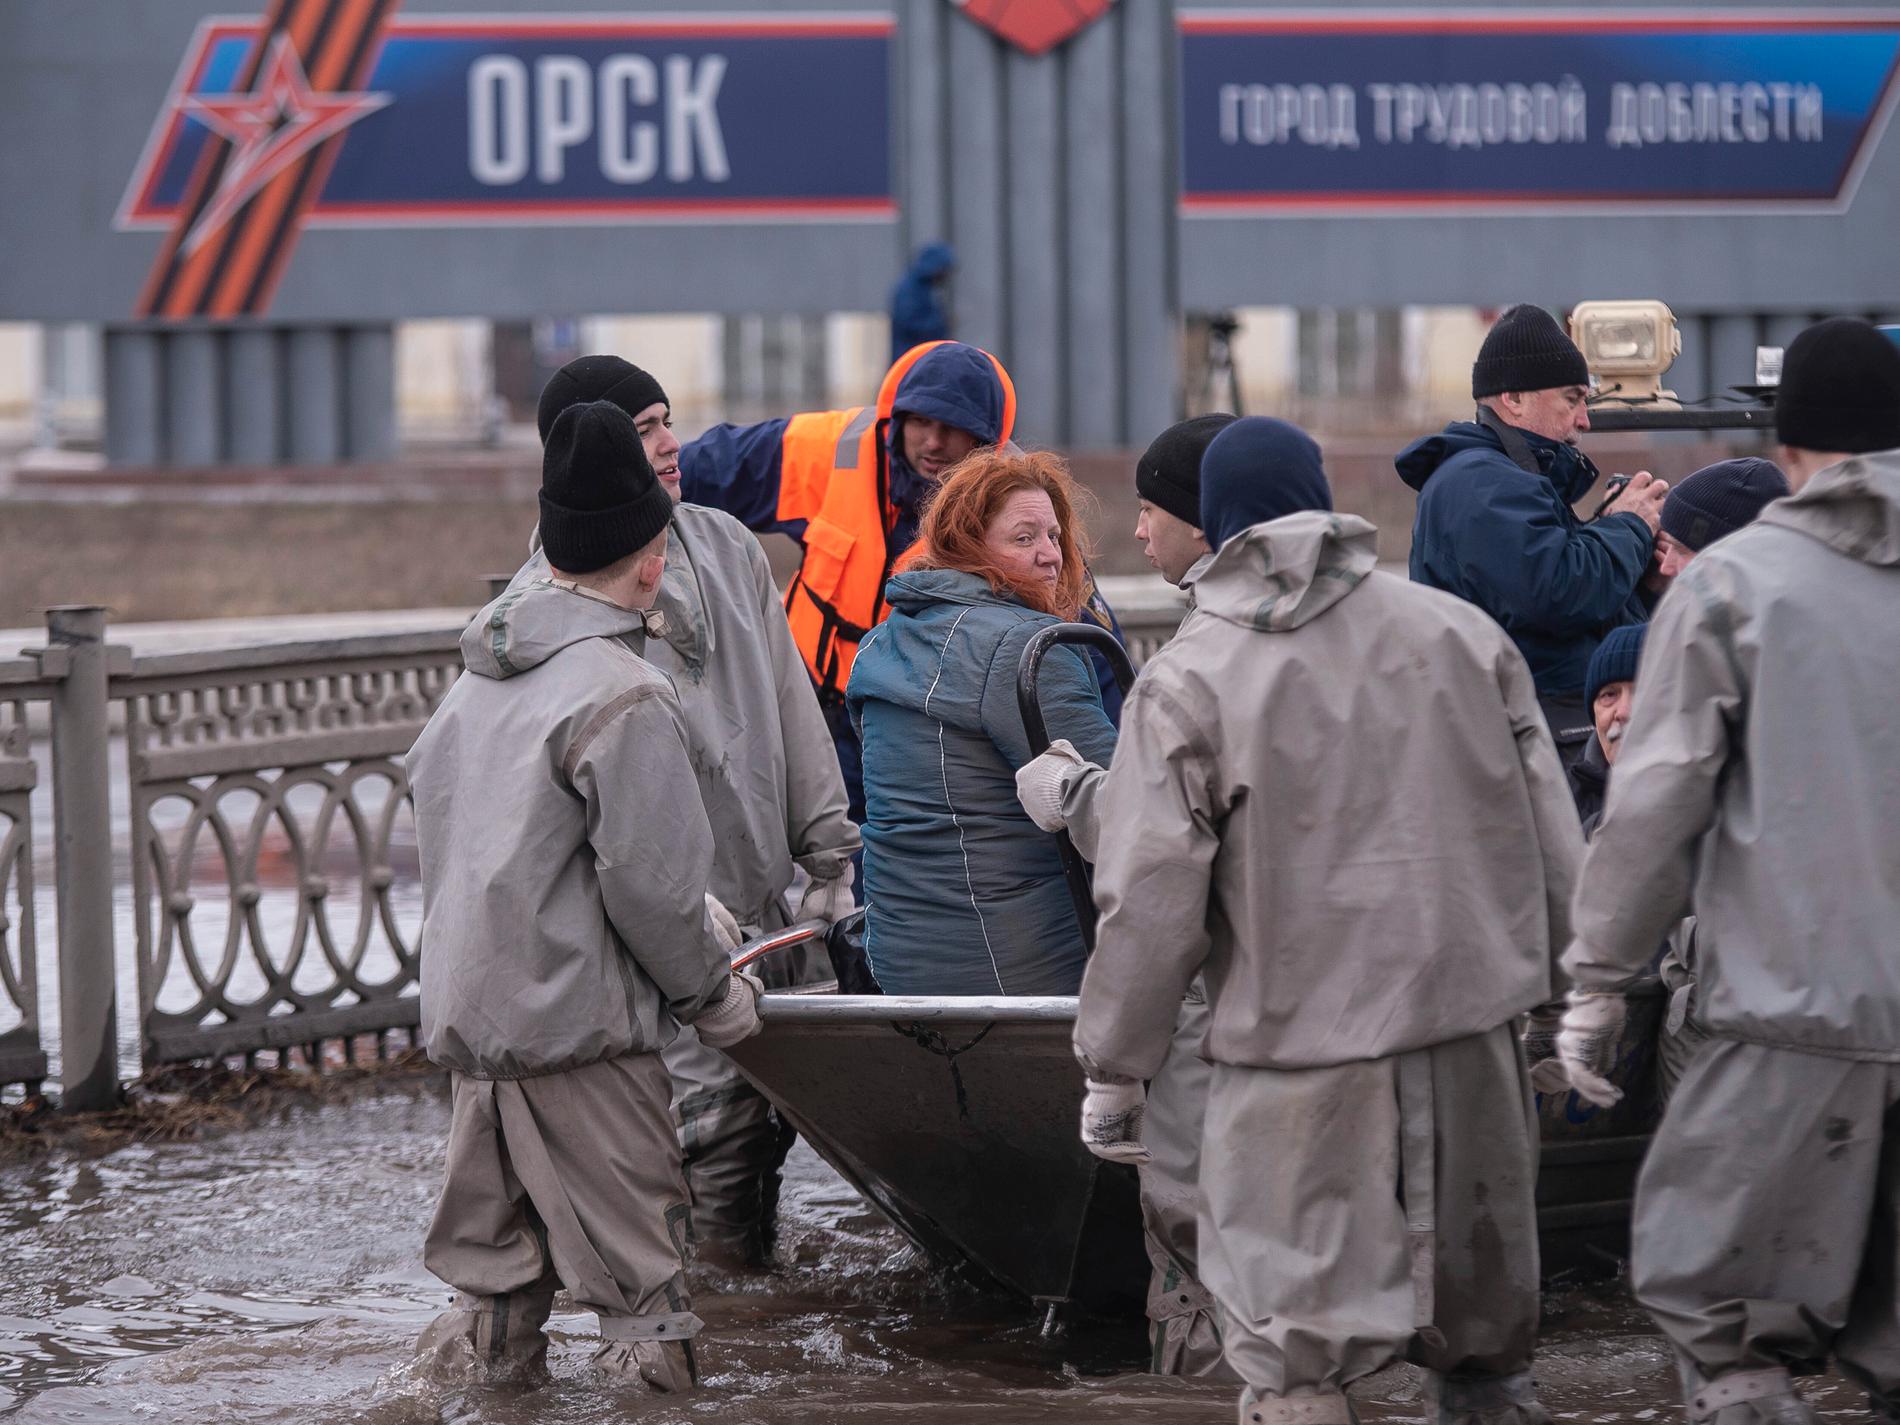 Brusten damm får ryssar att demonstrera